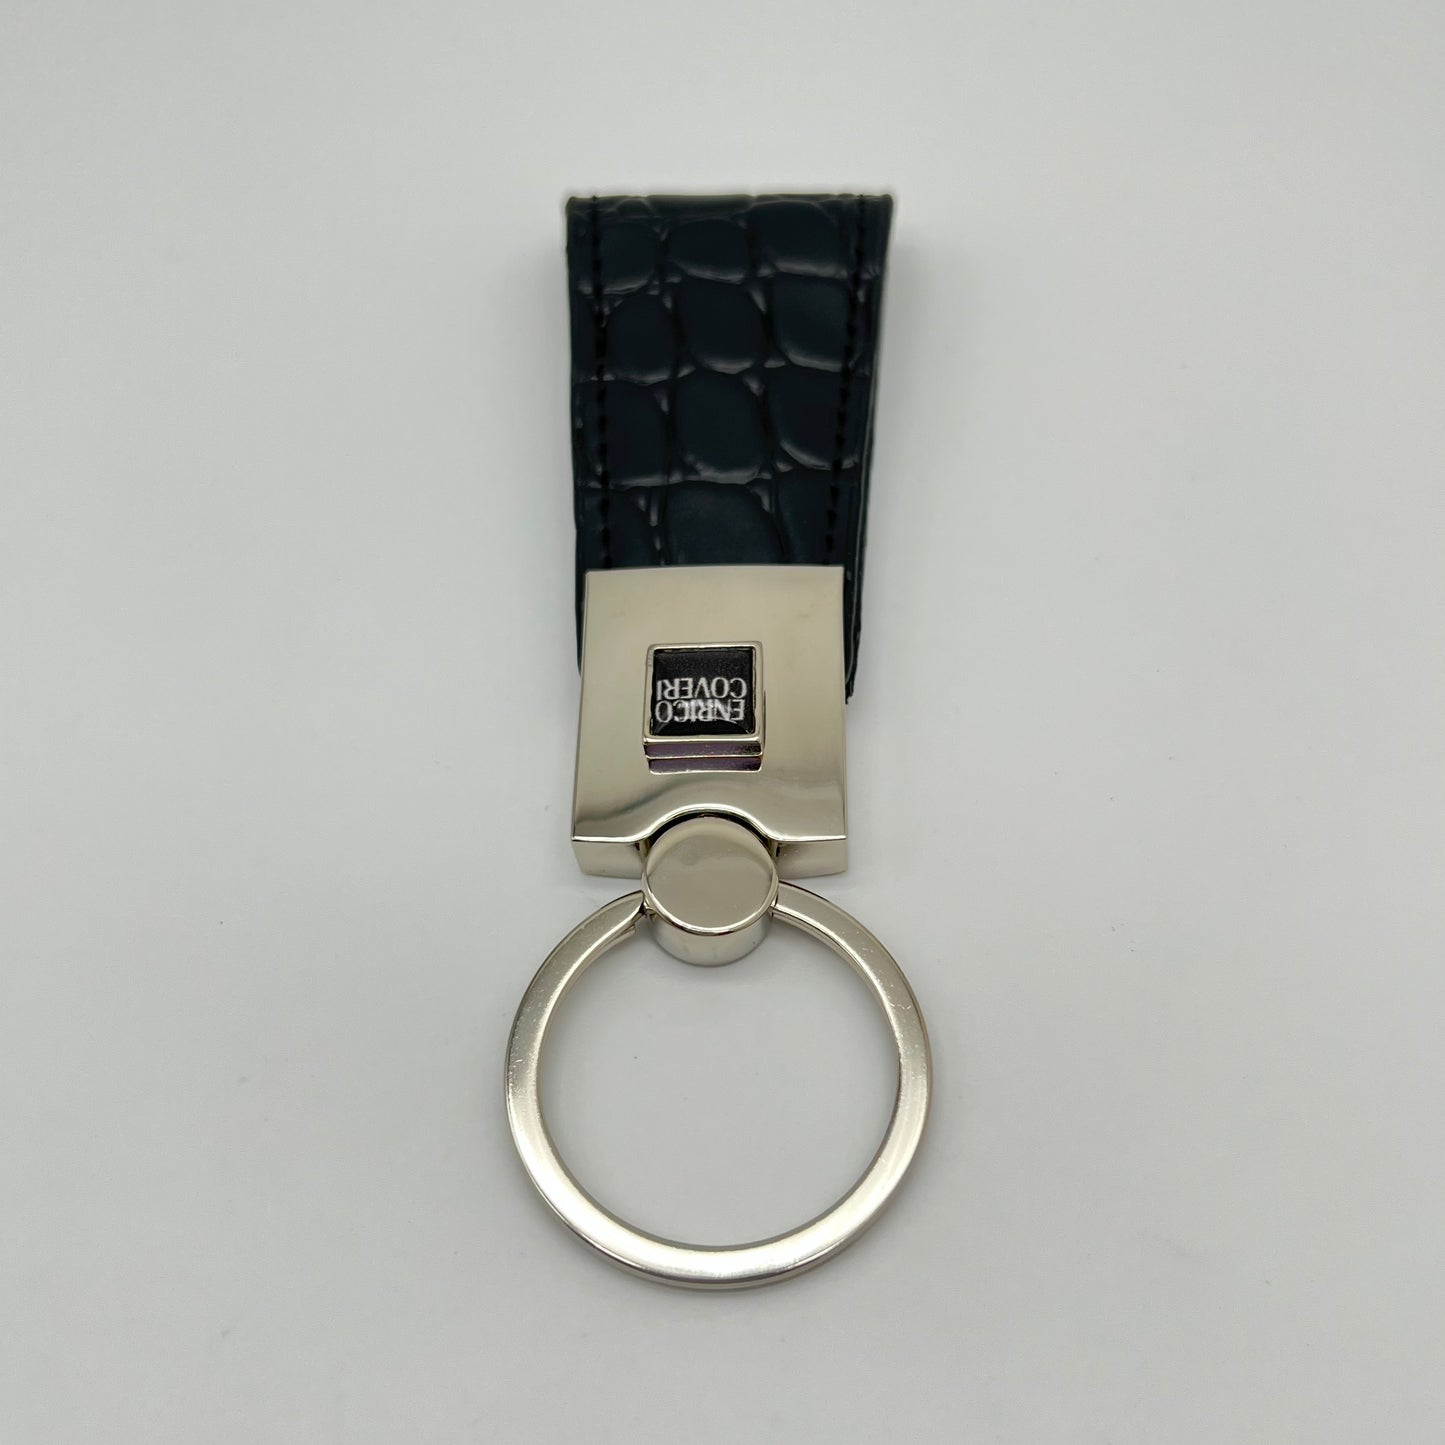 Enrico Coveri key ring